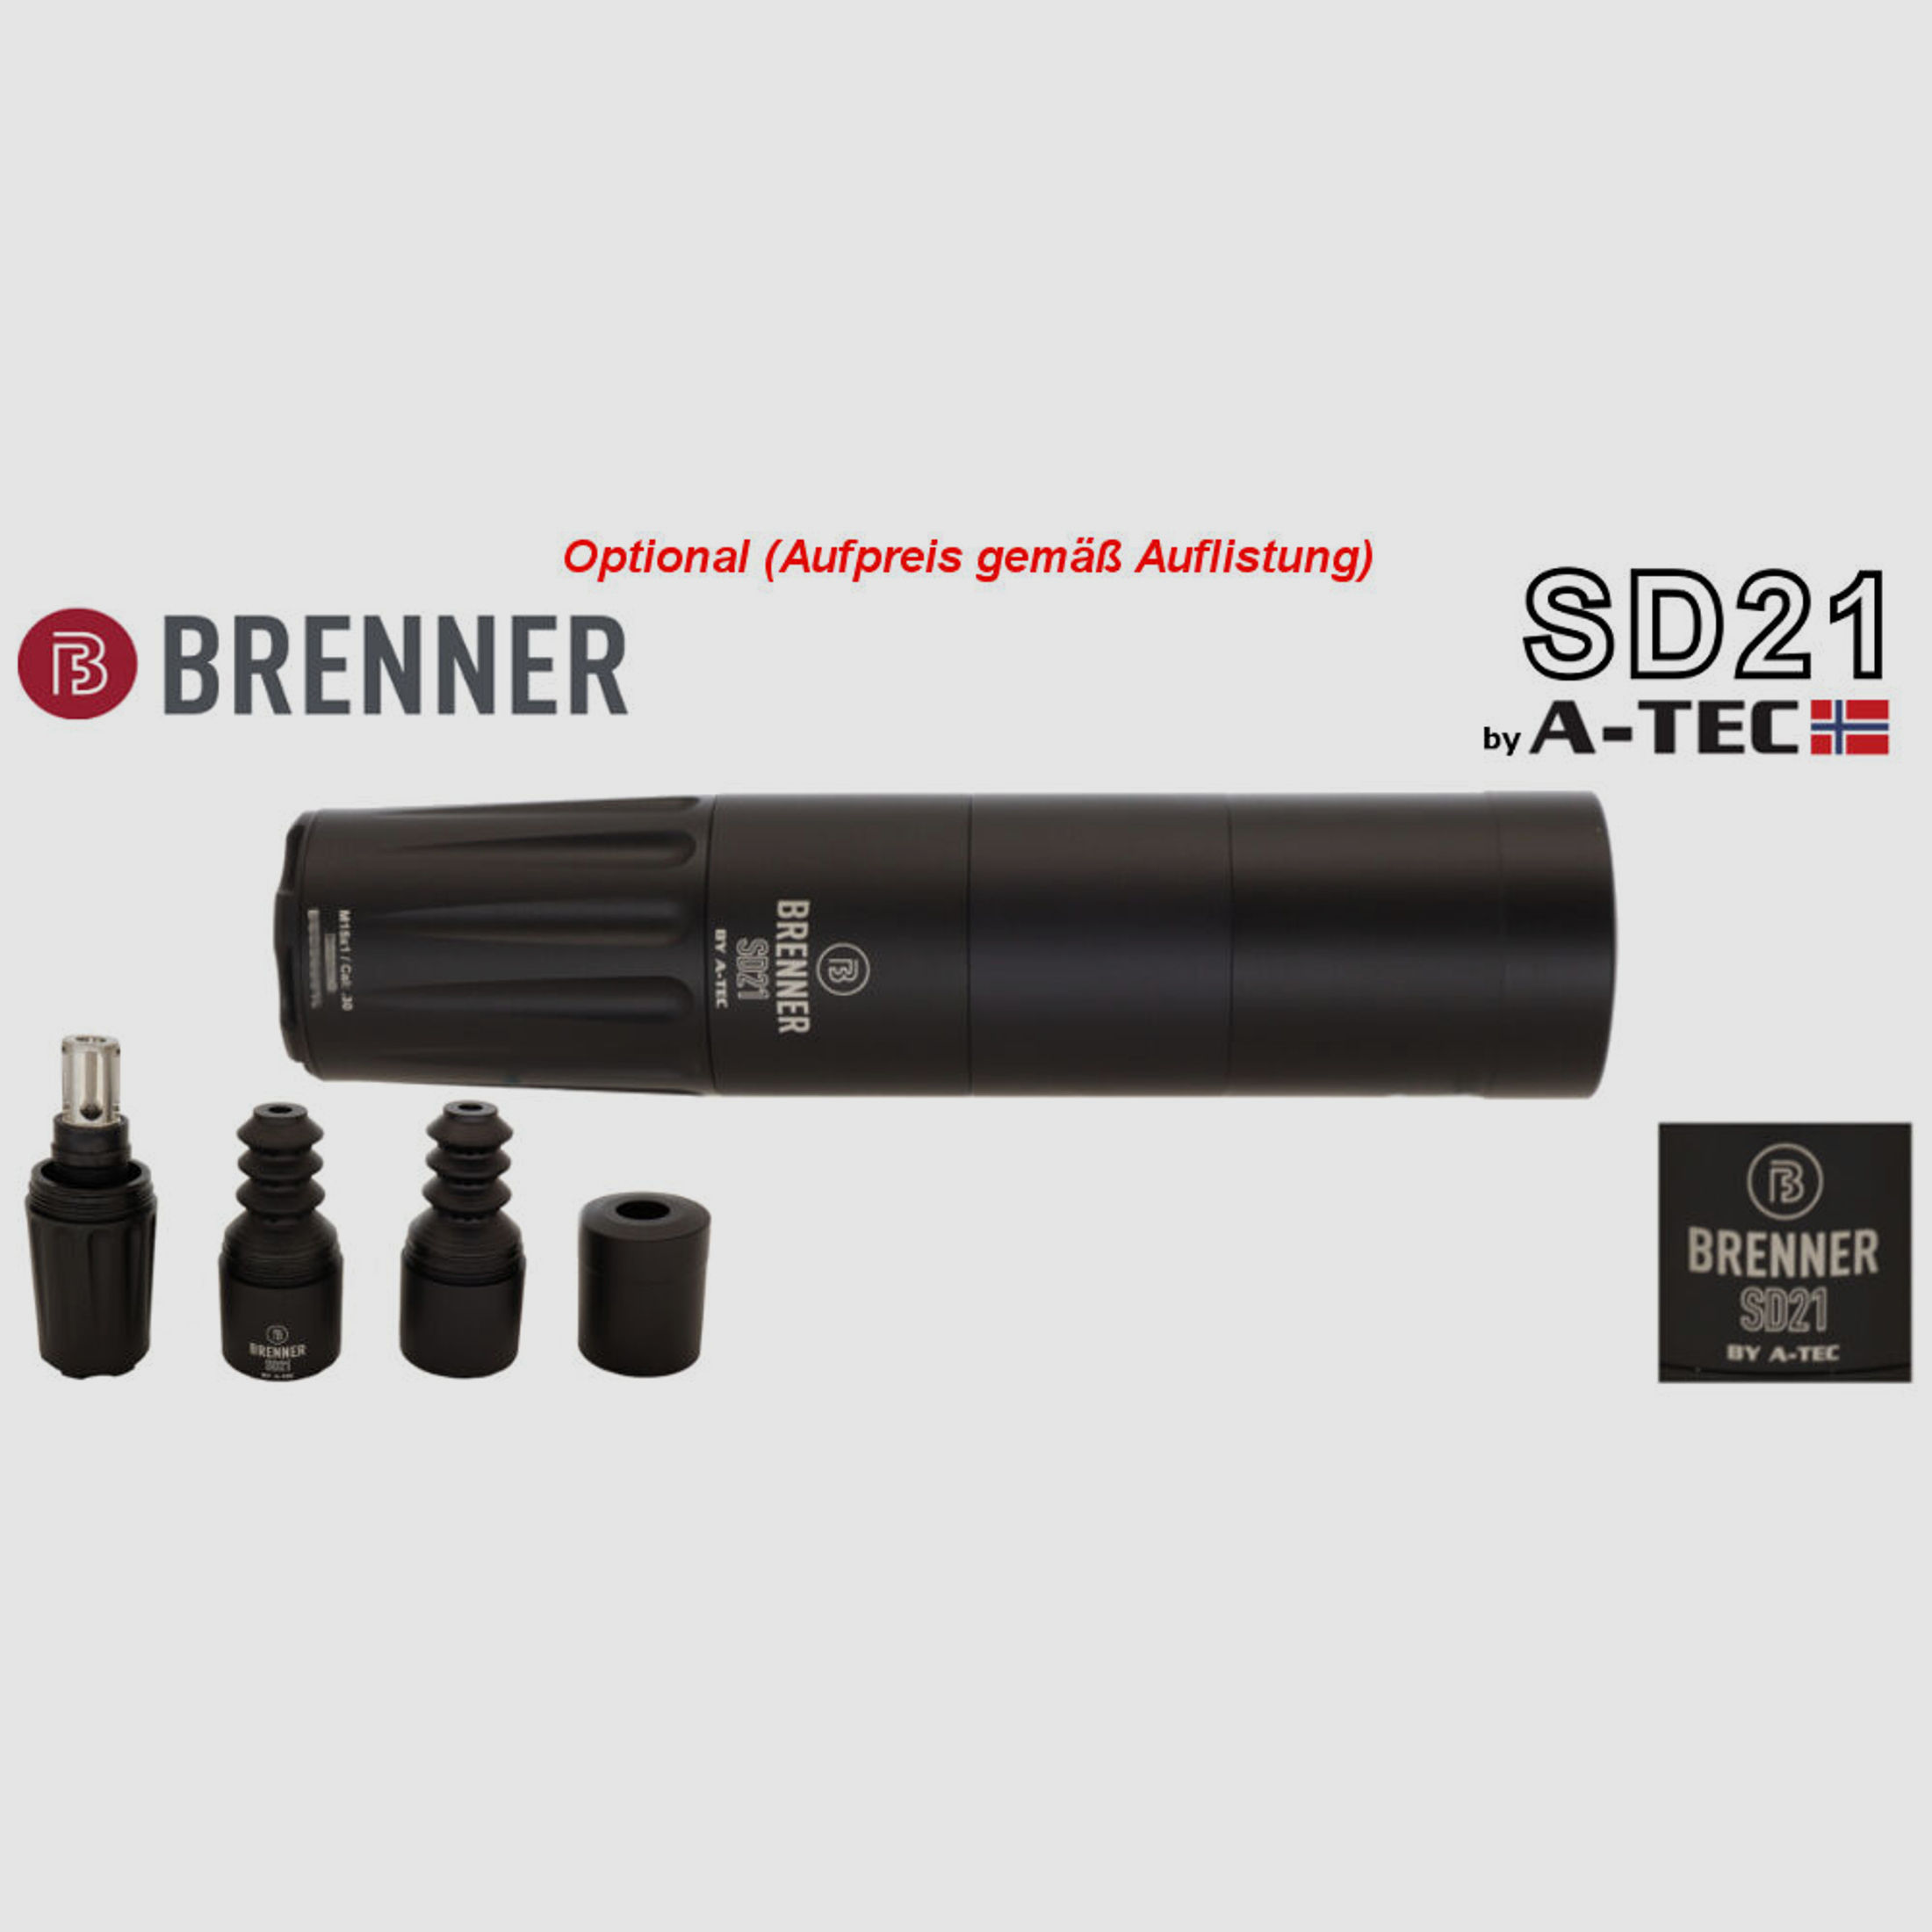 Bergara	 B14 B&H Prohunter Flex LINKS Lochschaft mit Steiner Ranger 3-12x56 fertig montiert / Optional: Brenner Schalldämpfer